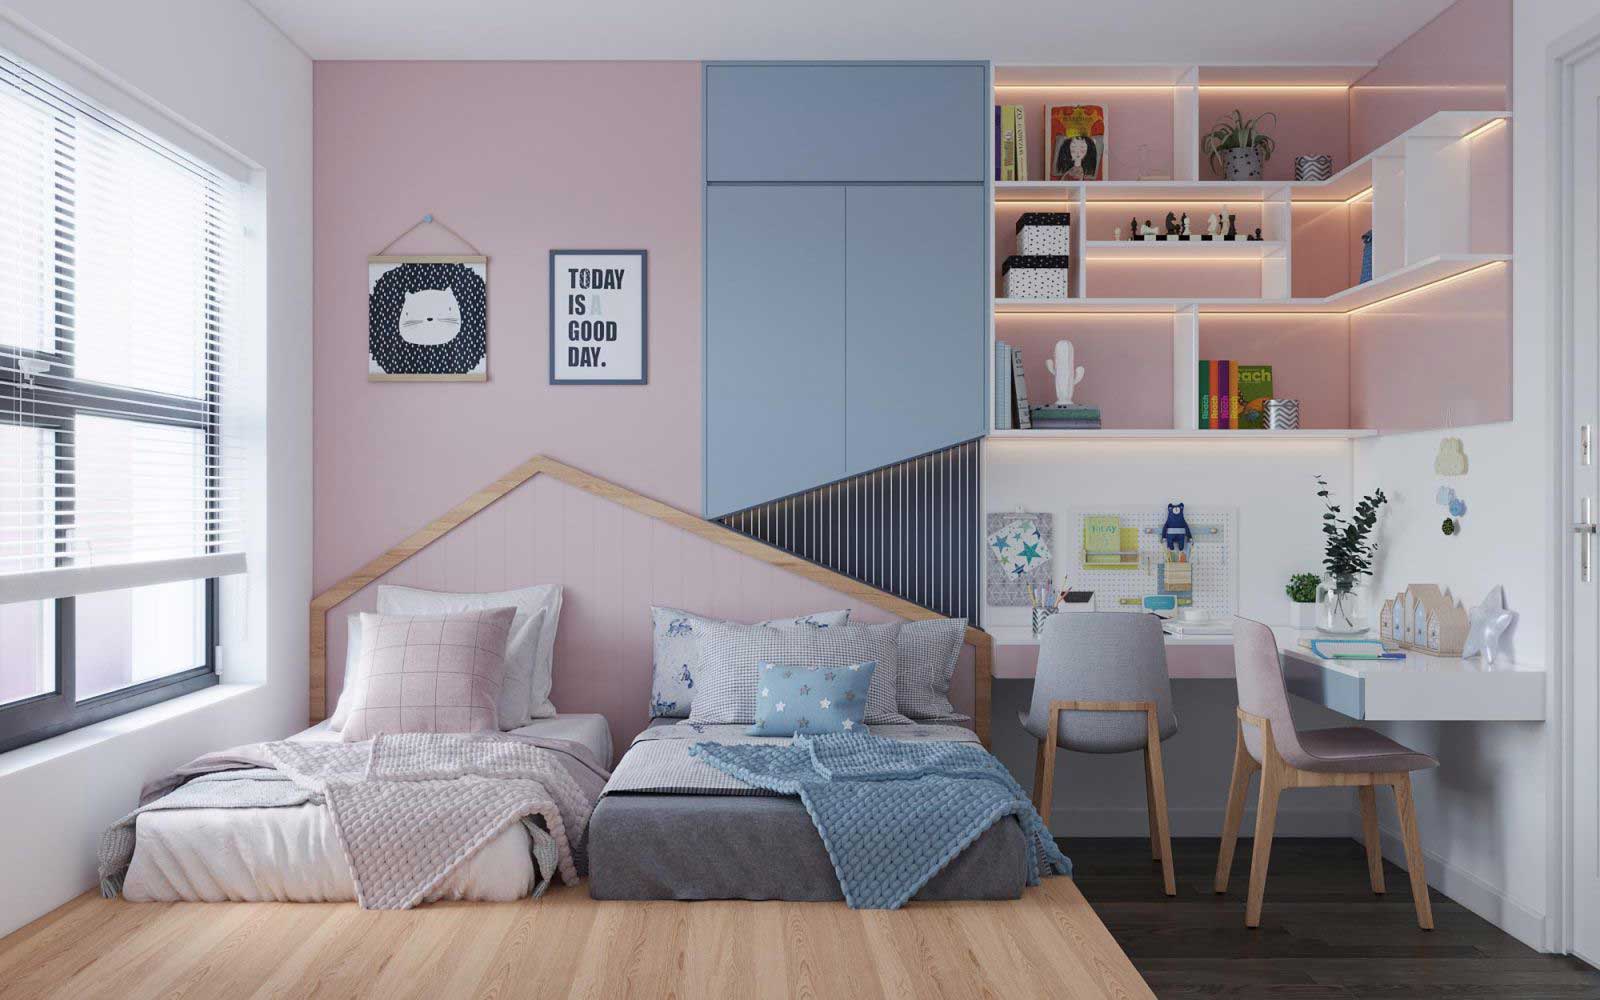 30 Mẫu thiết kế phòng ngủ đơn giản mà đẹp rạng ngời  ROMAN